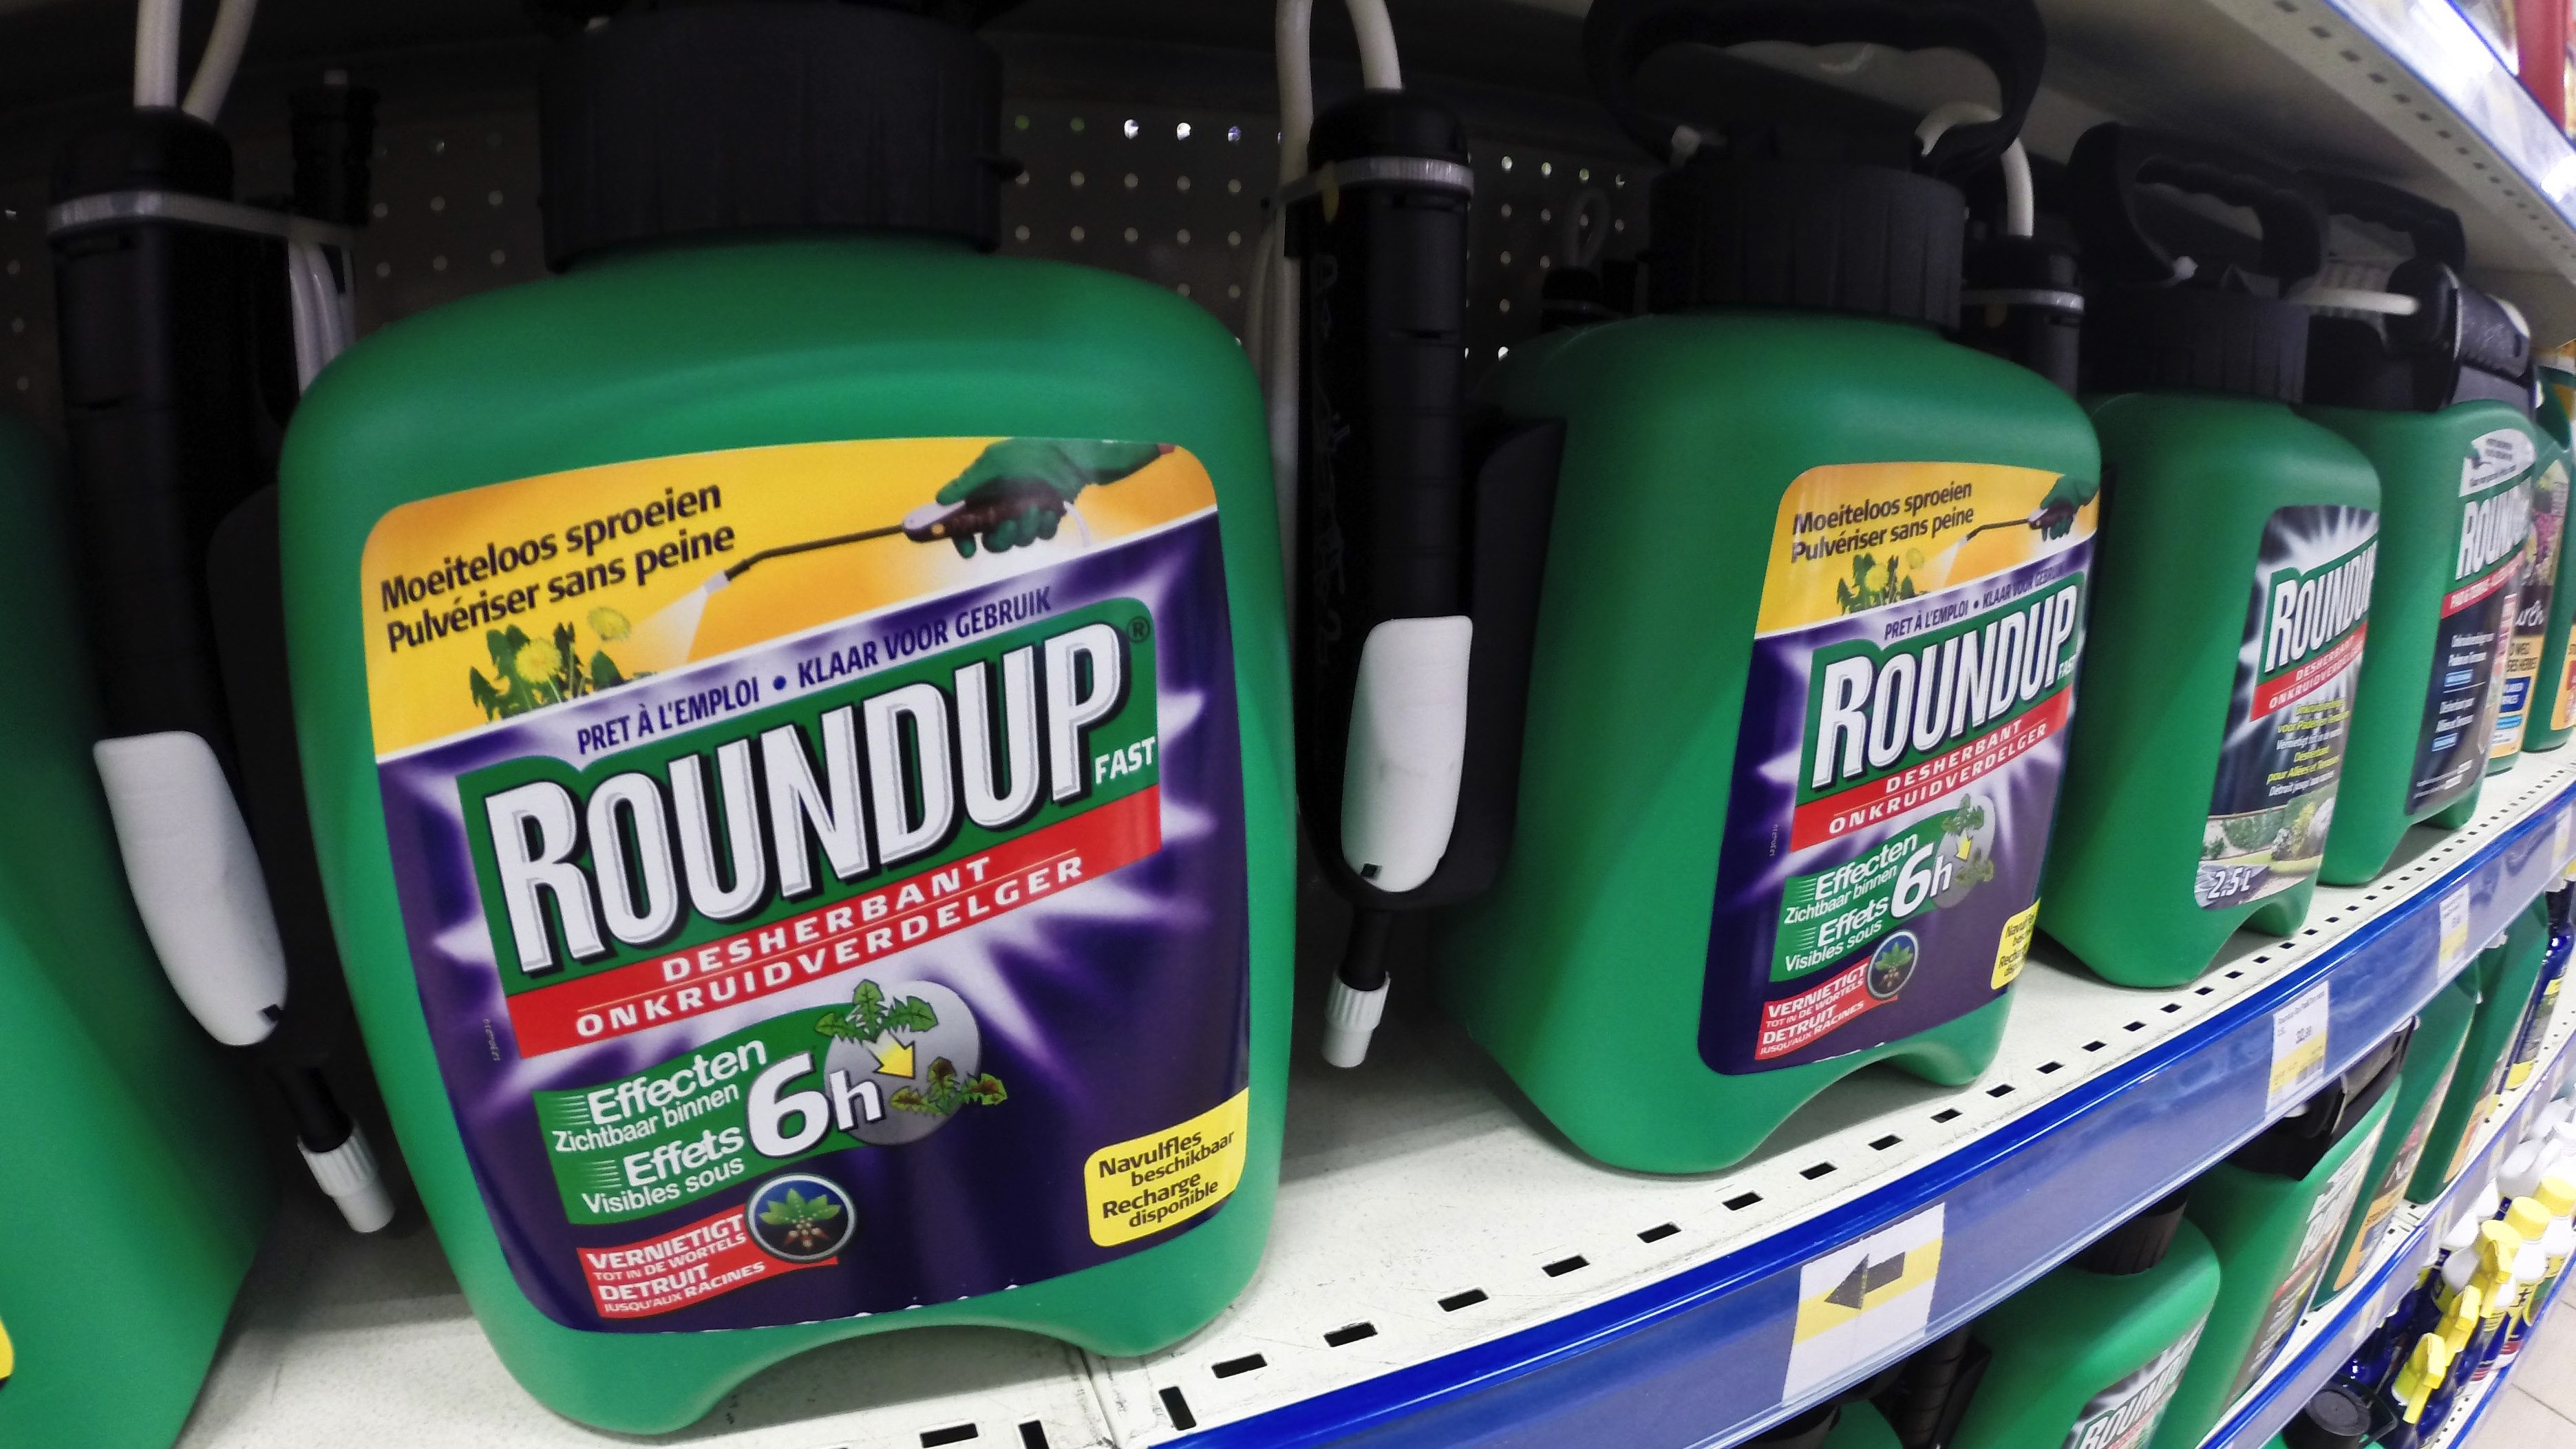 Du Roundup vendu à -50% au Carrefour de Mouscron: «Une erreur humaine», reconnait l'enseigne